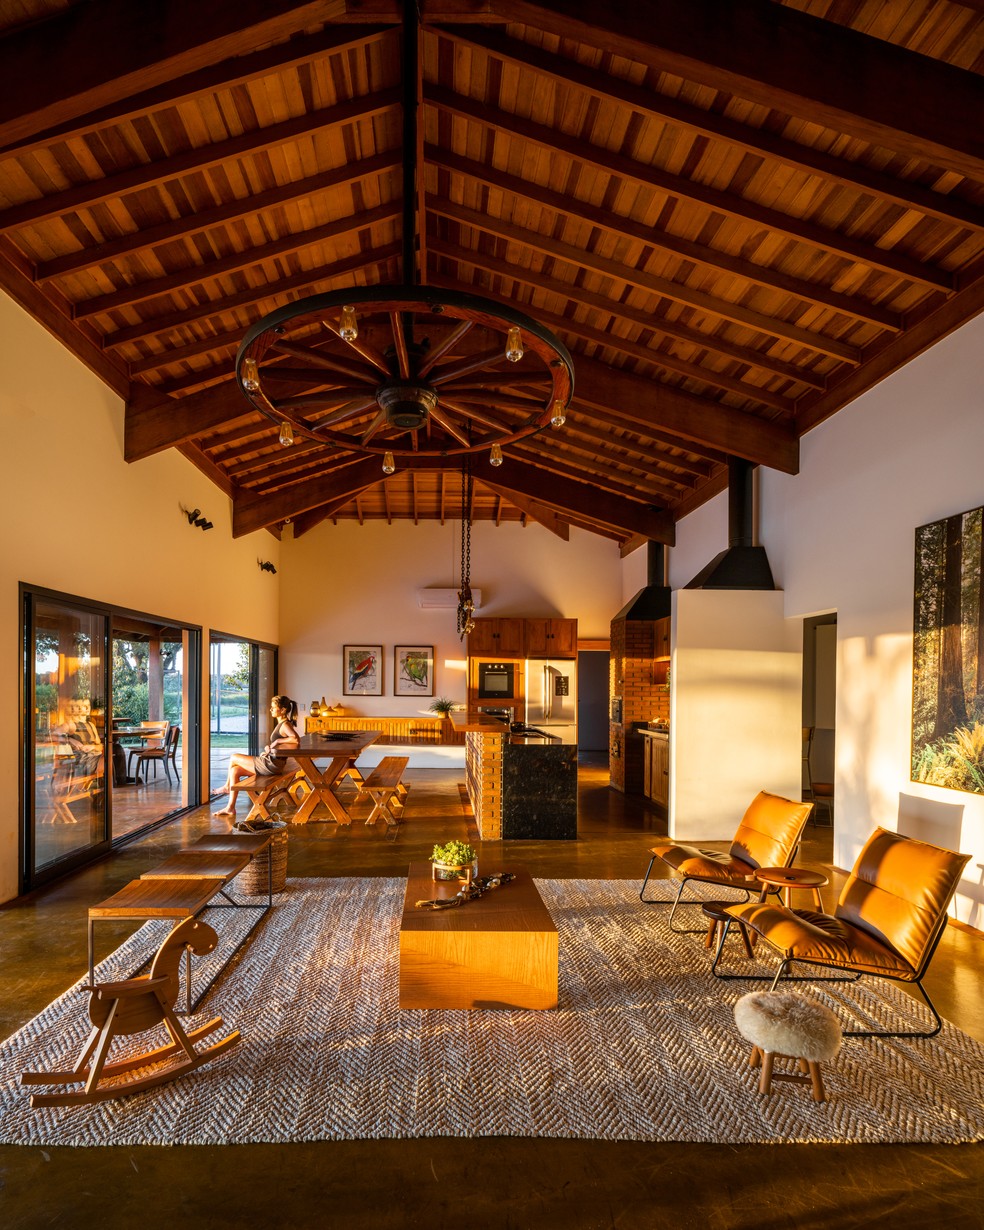 Em casa de campo, sala de estar e churrasqueira se unem em um ambiente só - valorizado pela luz do pôr do sol  — Foto: Manuel Sá